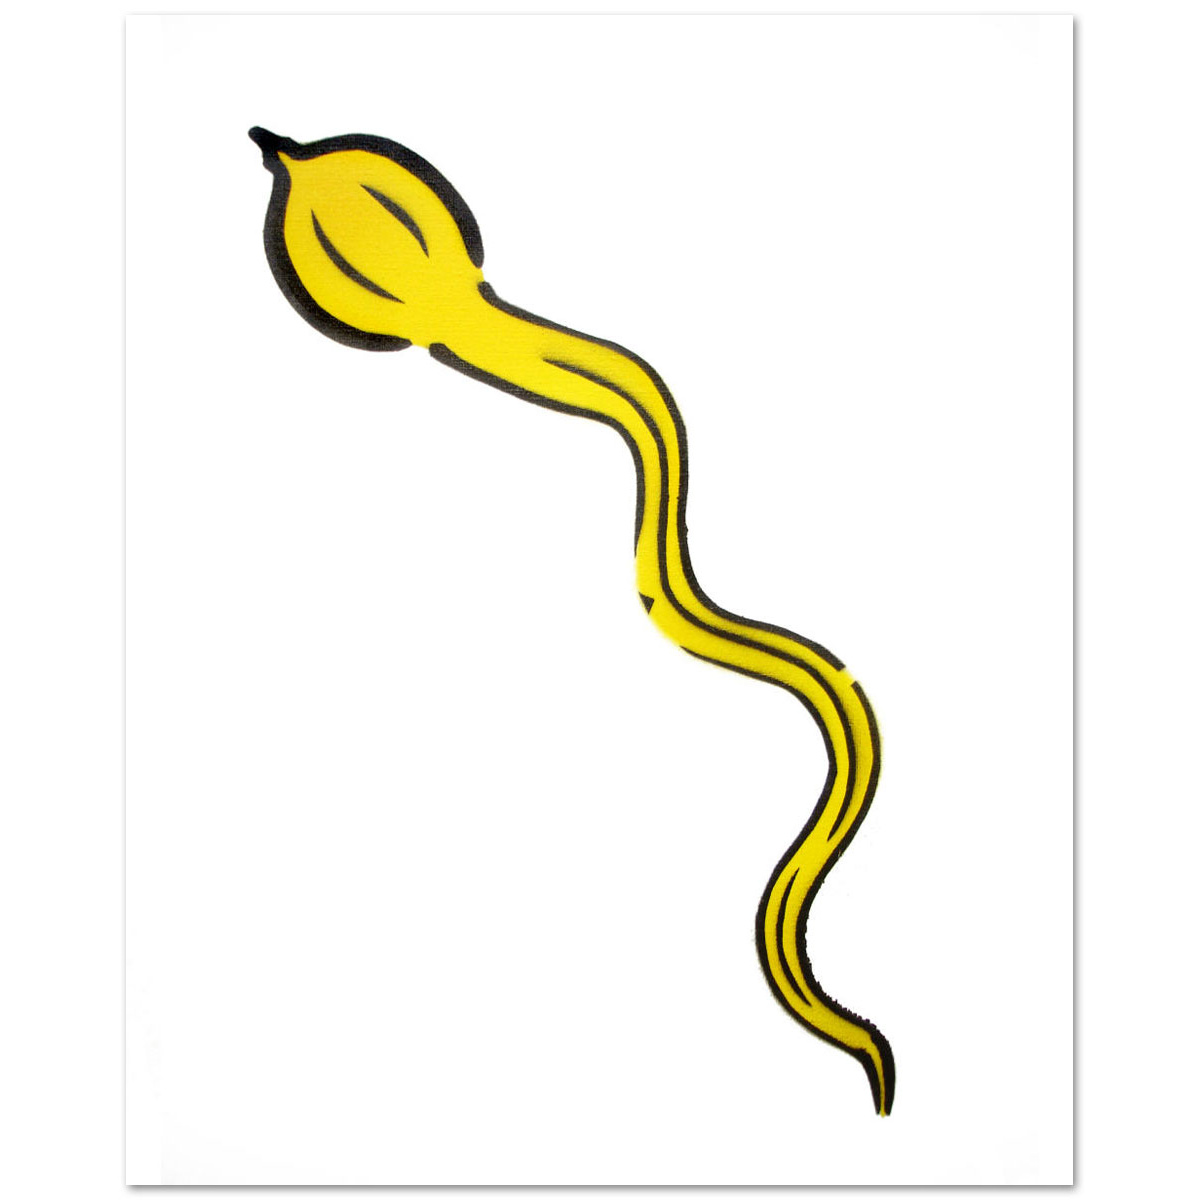 Spermium-Banane von Thomas Baumgärtel